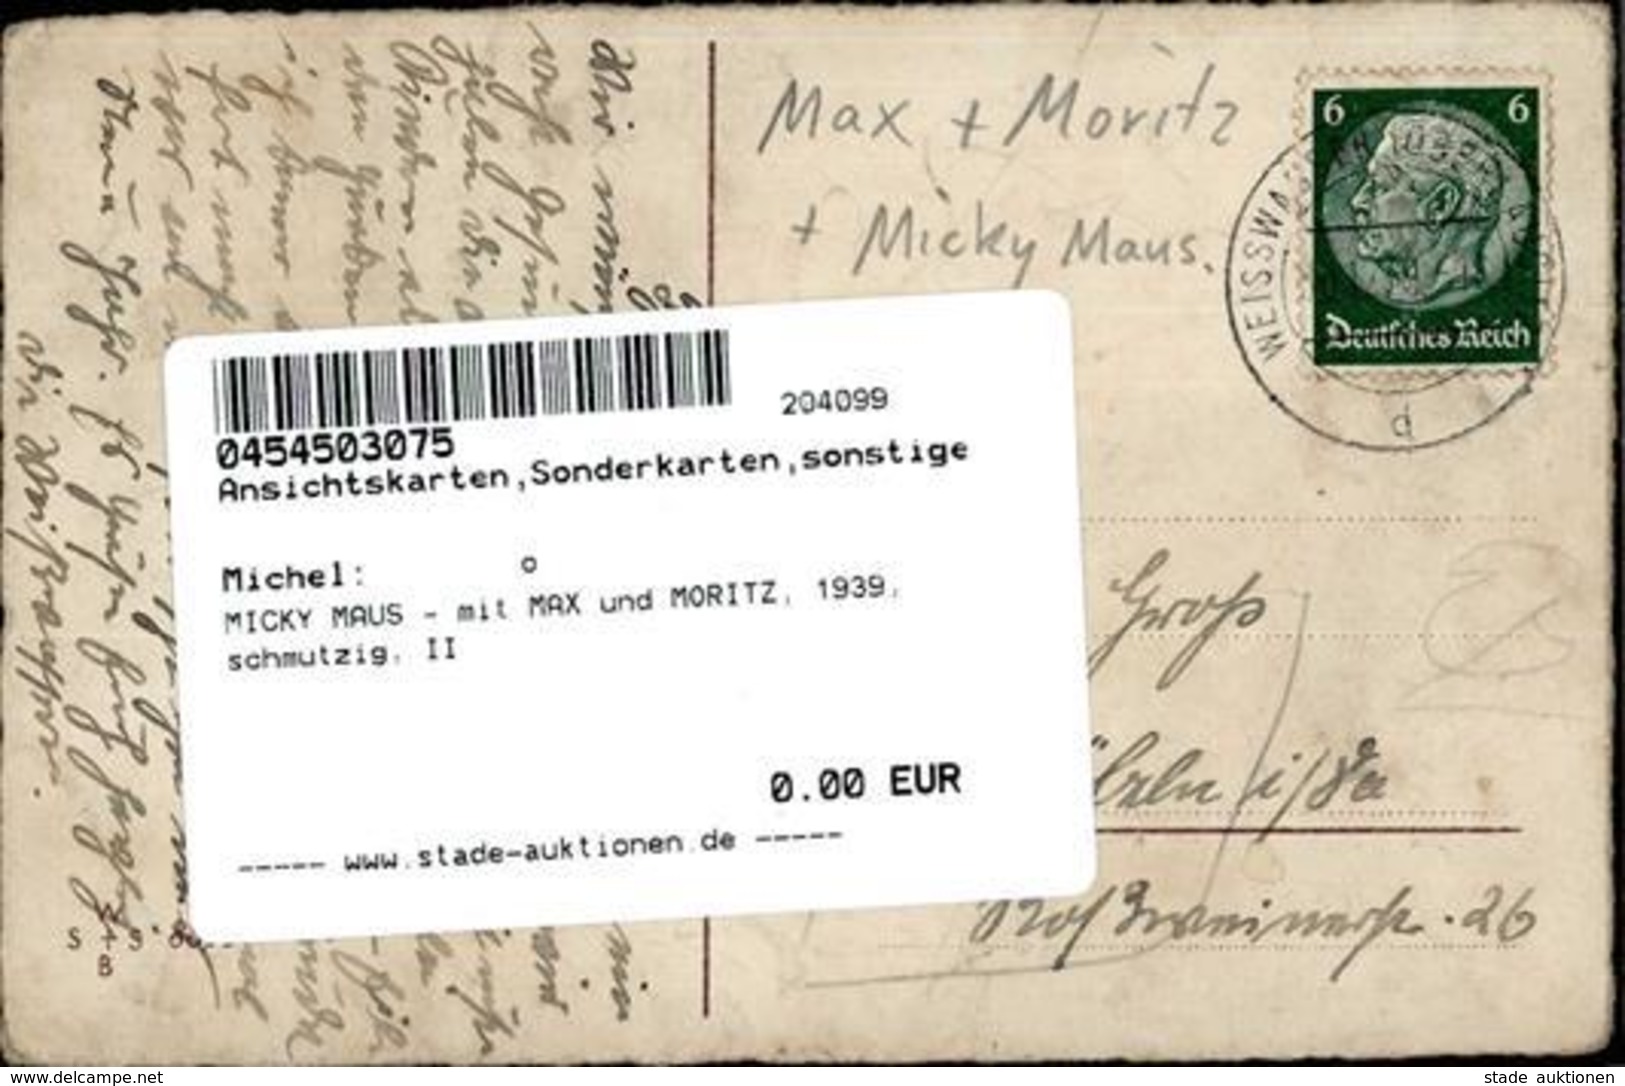 MICKY MAUS - Mit MAX Und MORITZ, 1939, Schmutzig, II - Unclassified